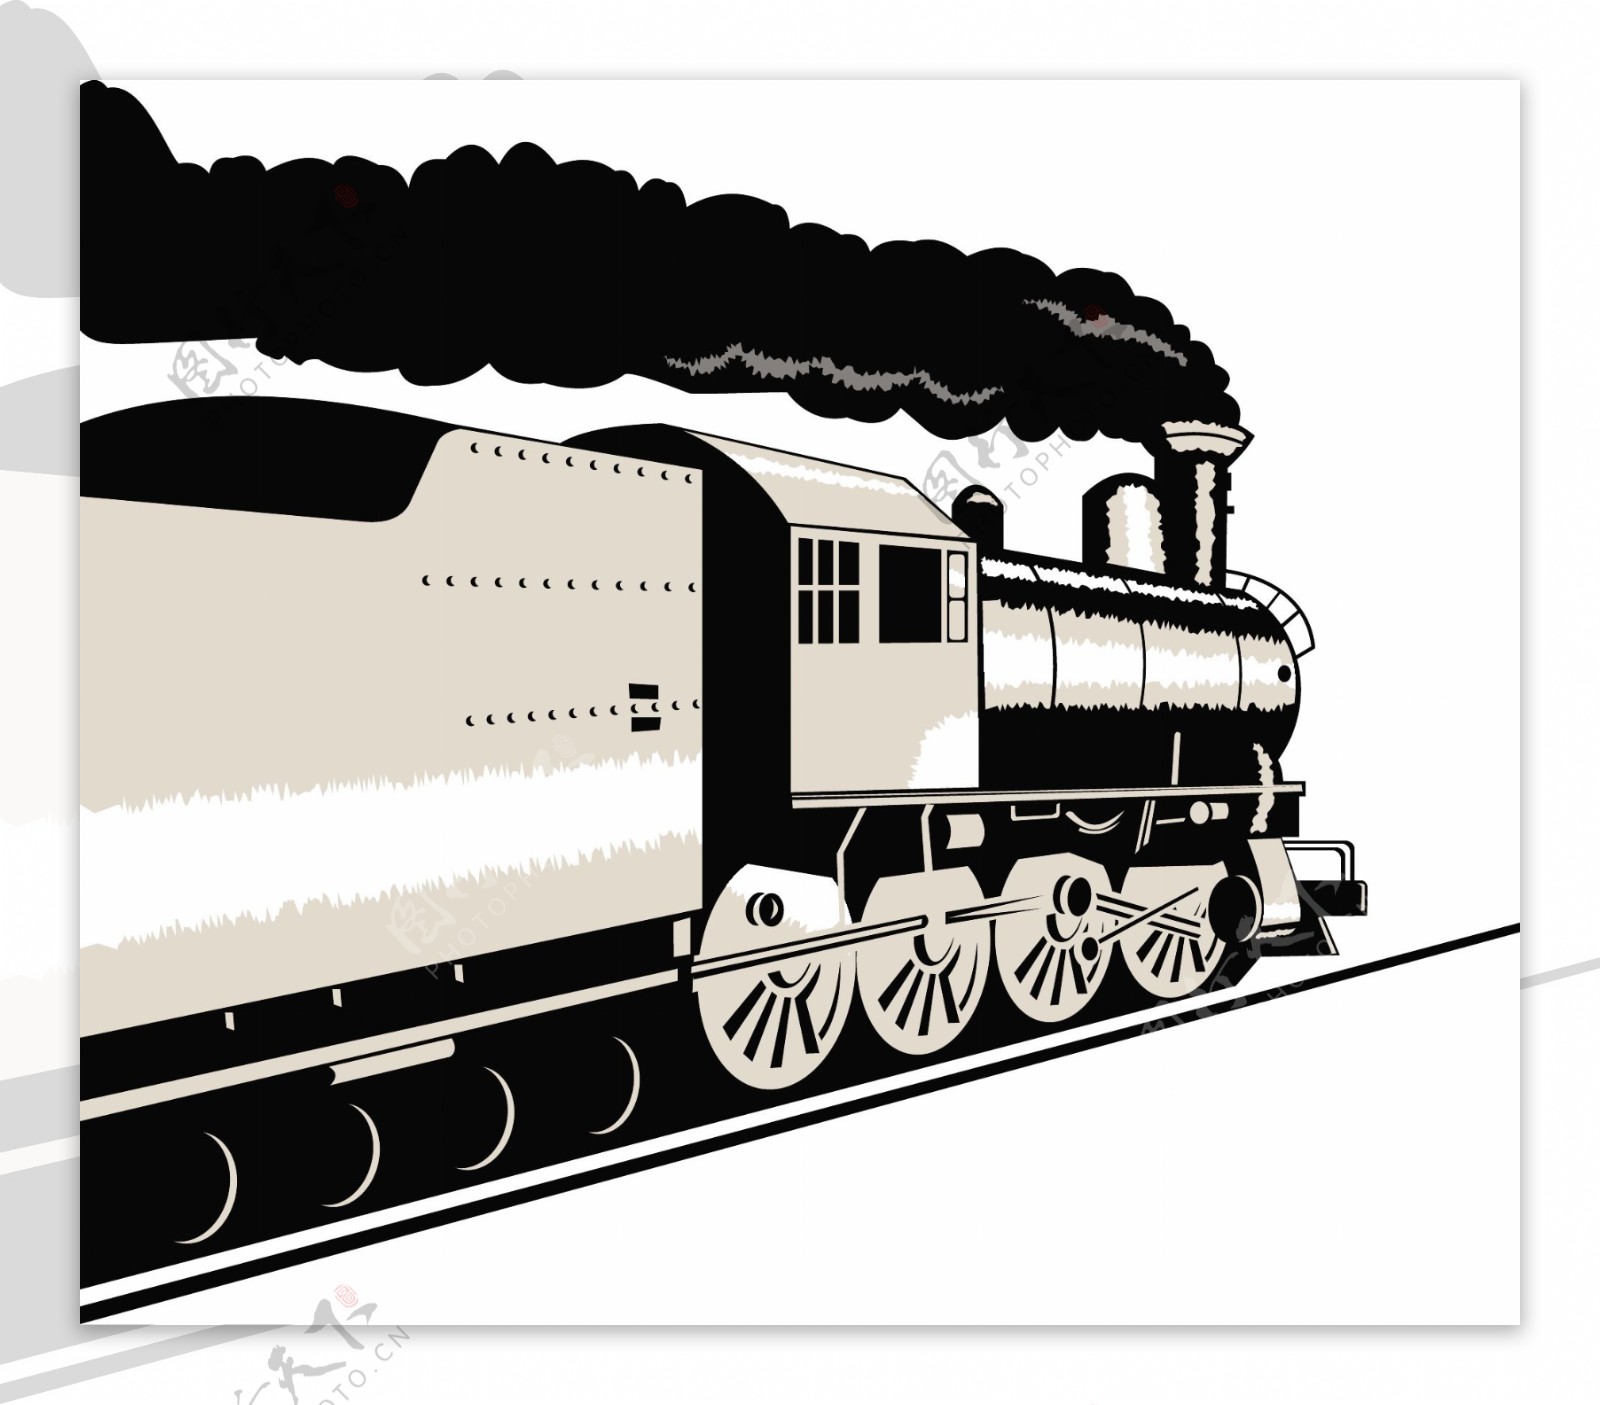 老式蒸汽火车机车